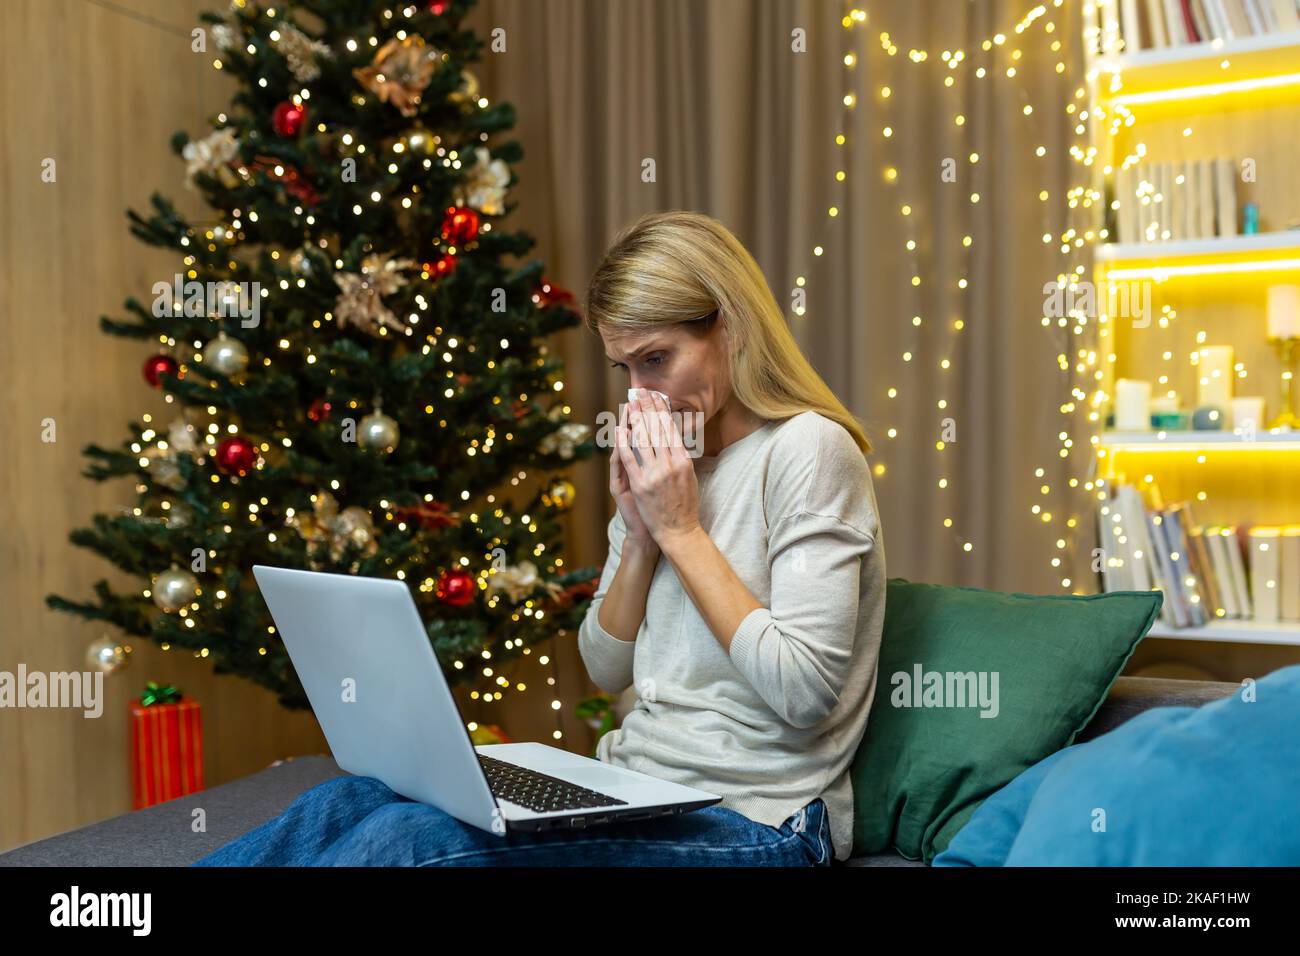 Une jeune femme est tombée malade pendant les vacances de Noël. Assis à la maison sur le canapé près de l'arbre, tenant un ordinateur portable, consultant avec un médecin par appel vidéo. Il essuie son nez avec une serviette, se sent mal. Banque D'Images